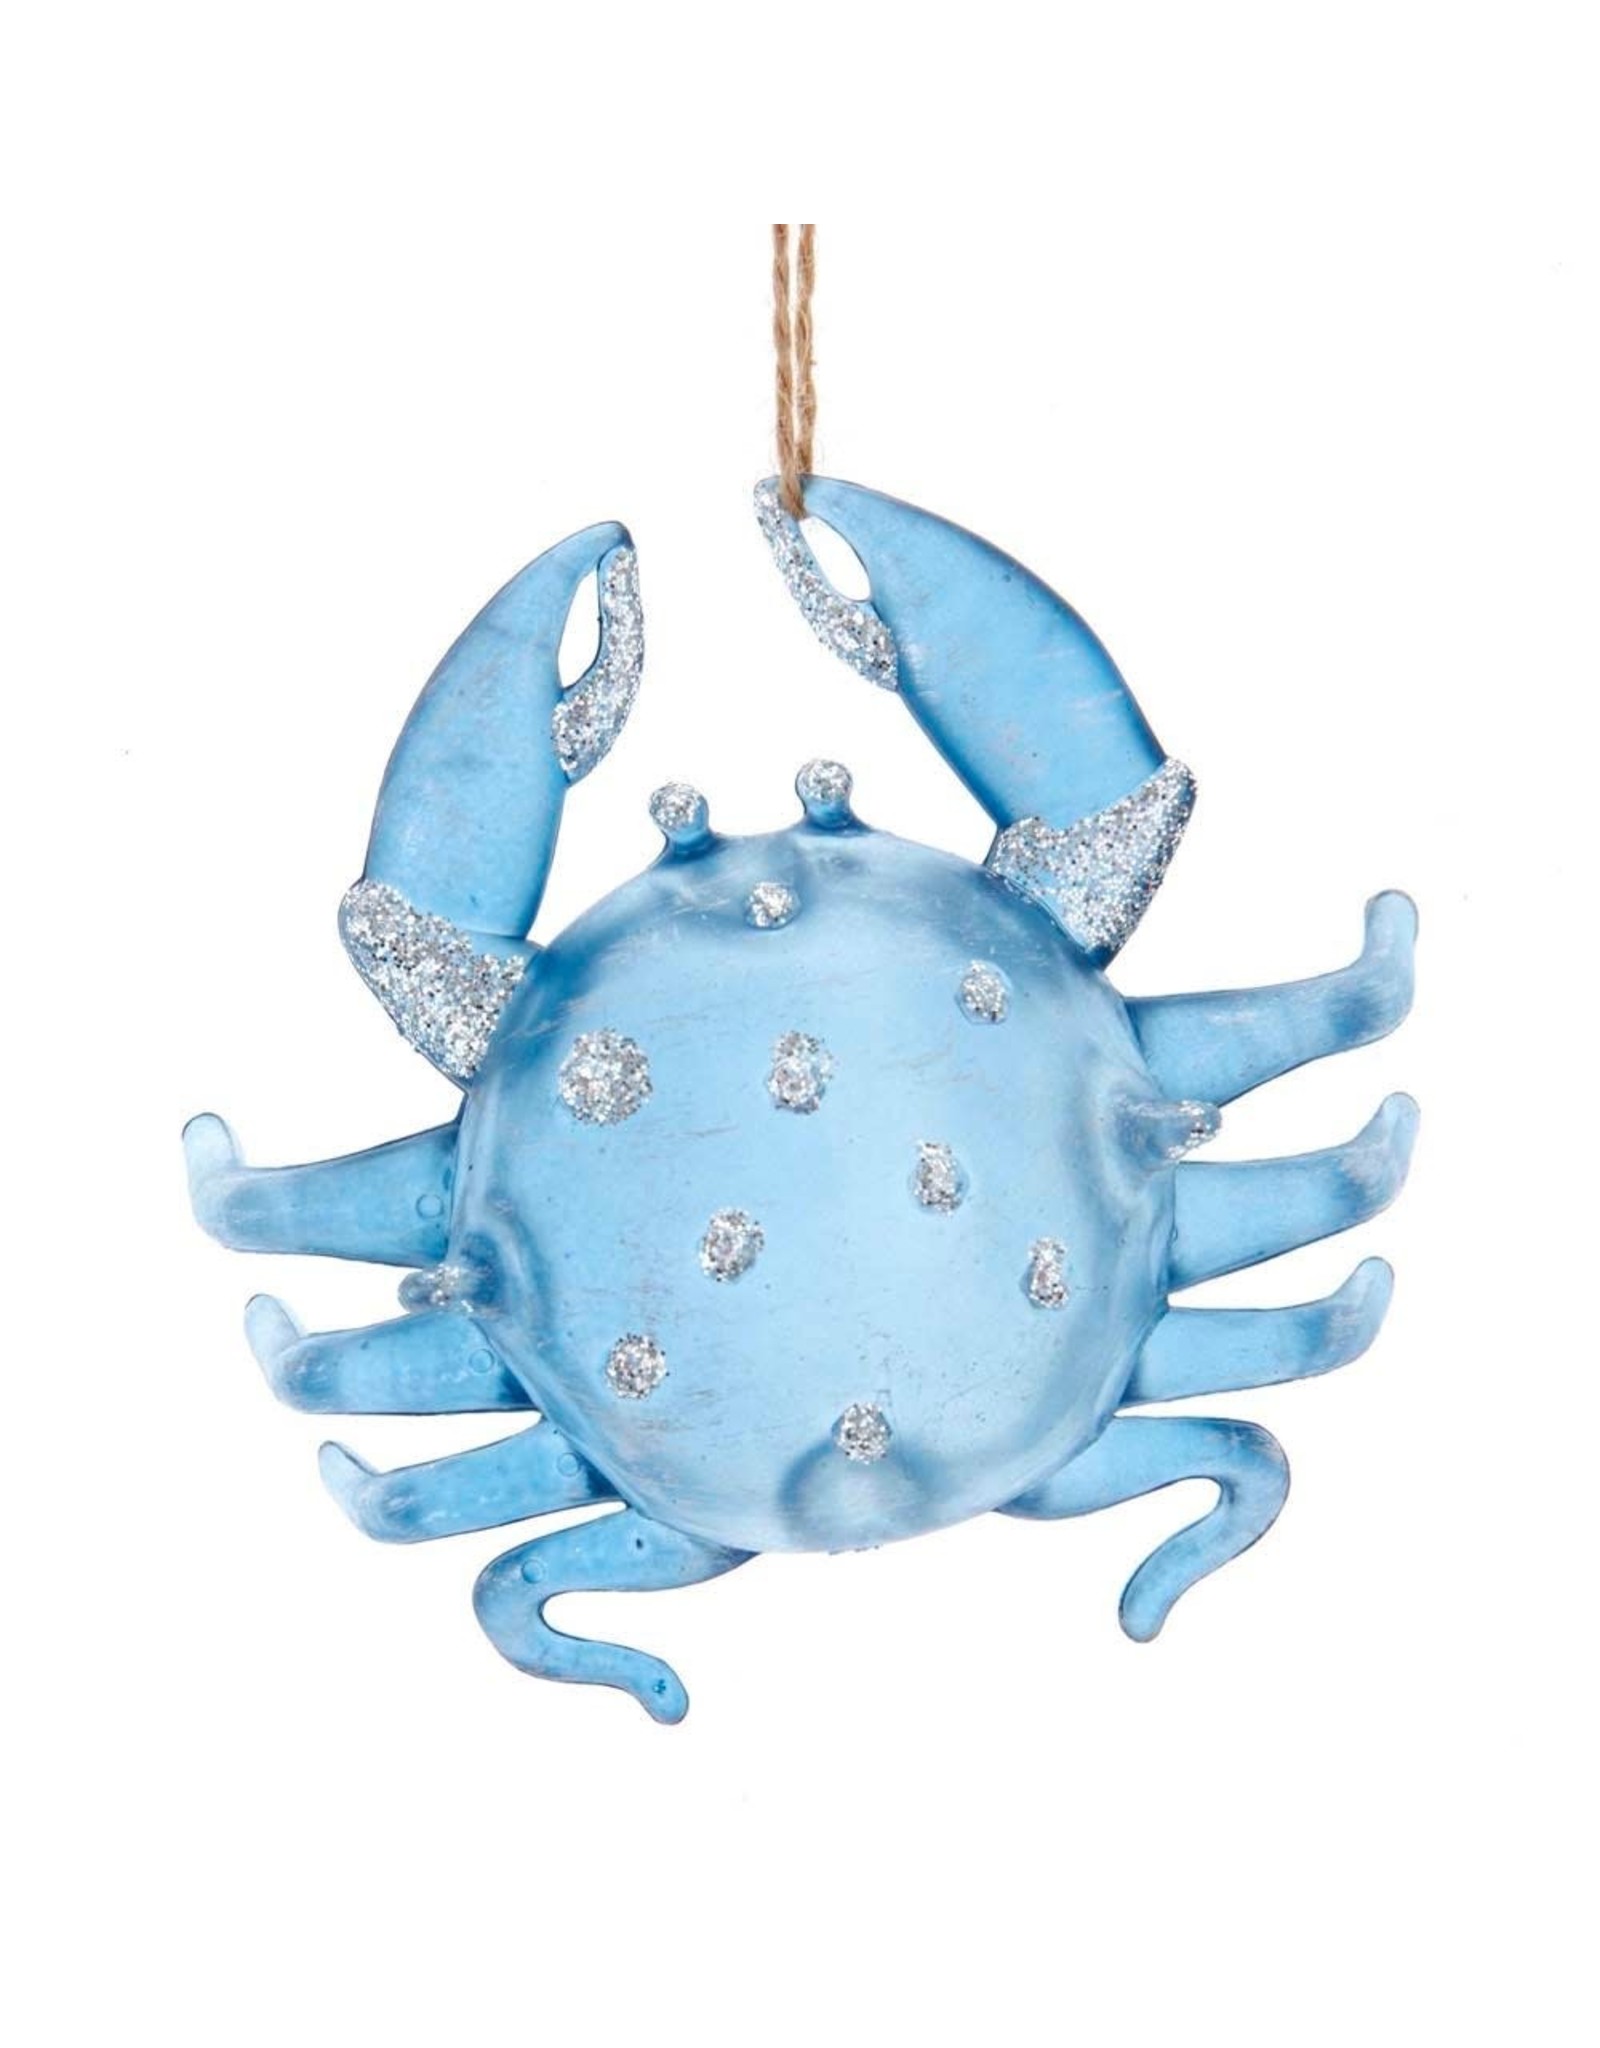 Kurt Adler Glittered Crab Ornament 4 Inches